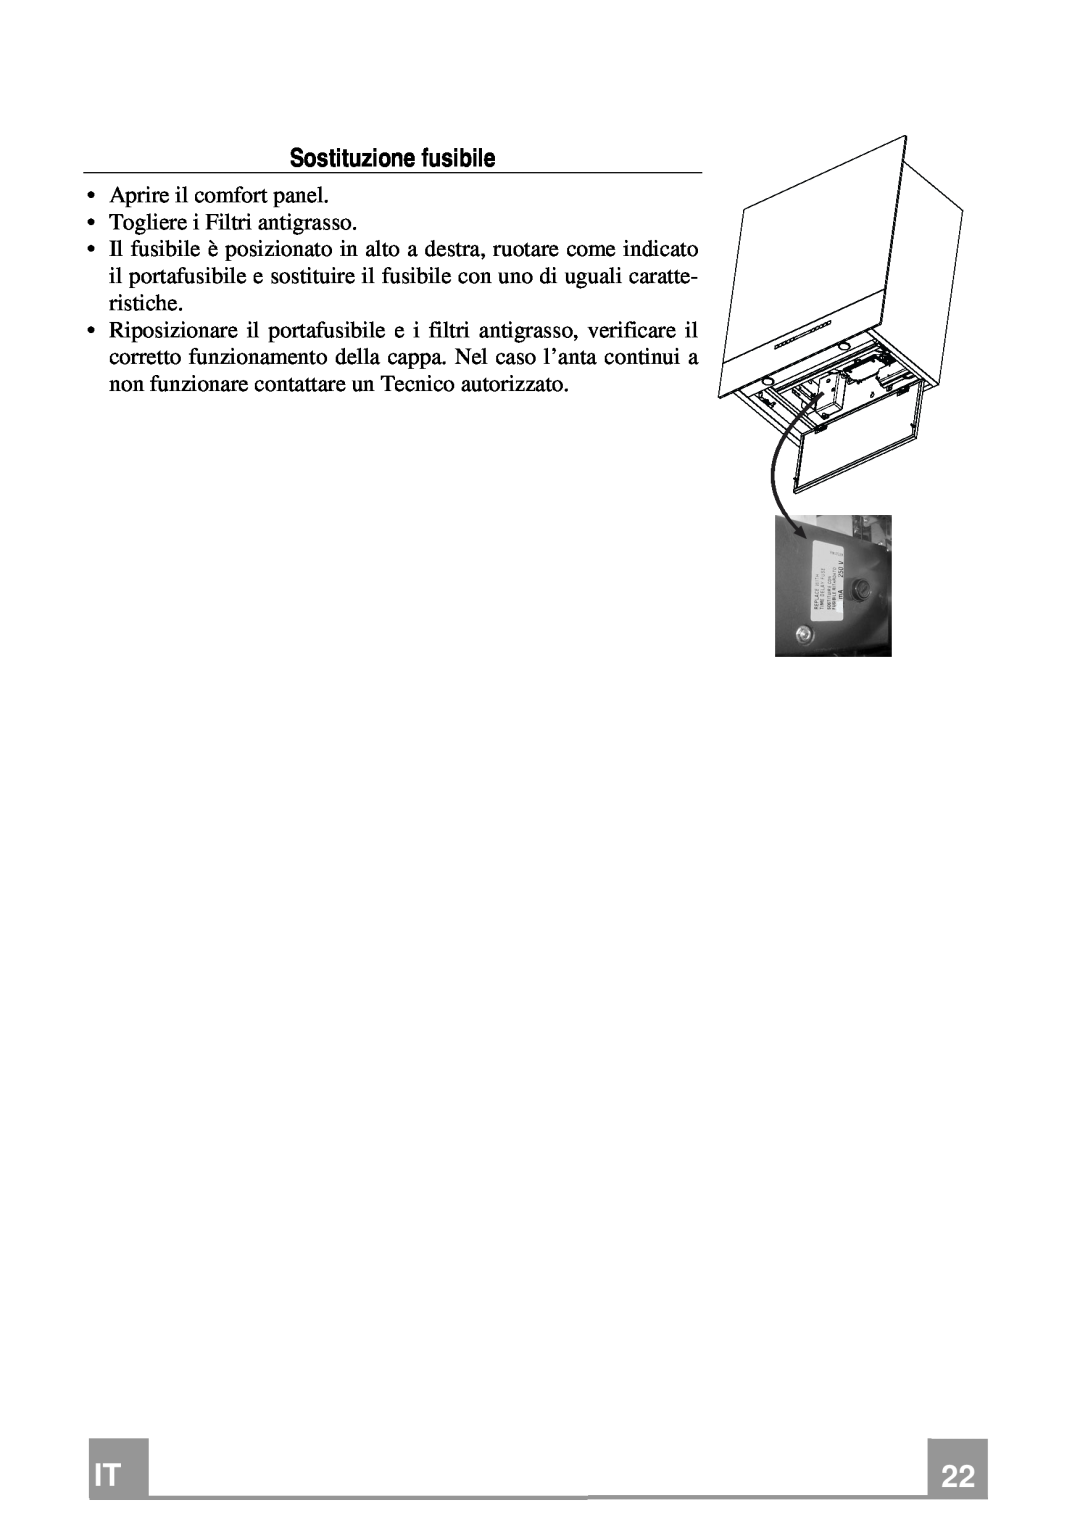 Franke Consumer Products FCR 708-H TC manual Sostituzione fusibile, Aprire il comfort panel Togliere i Filtri antigrasso 